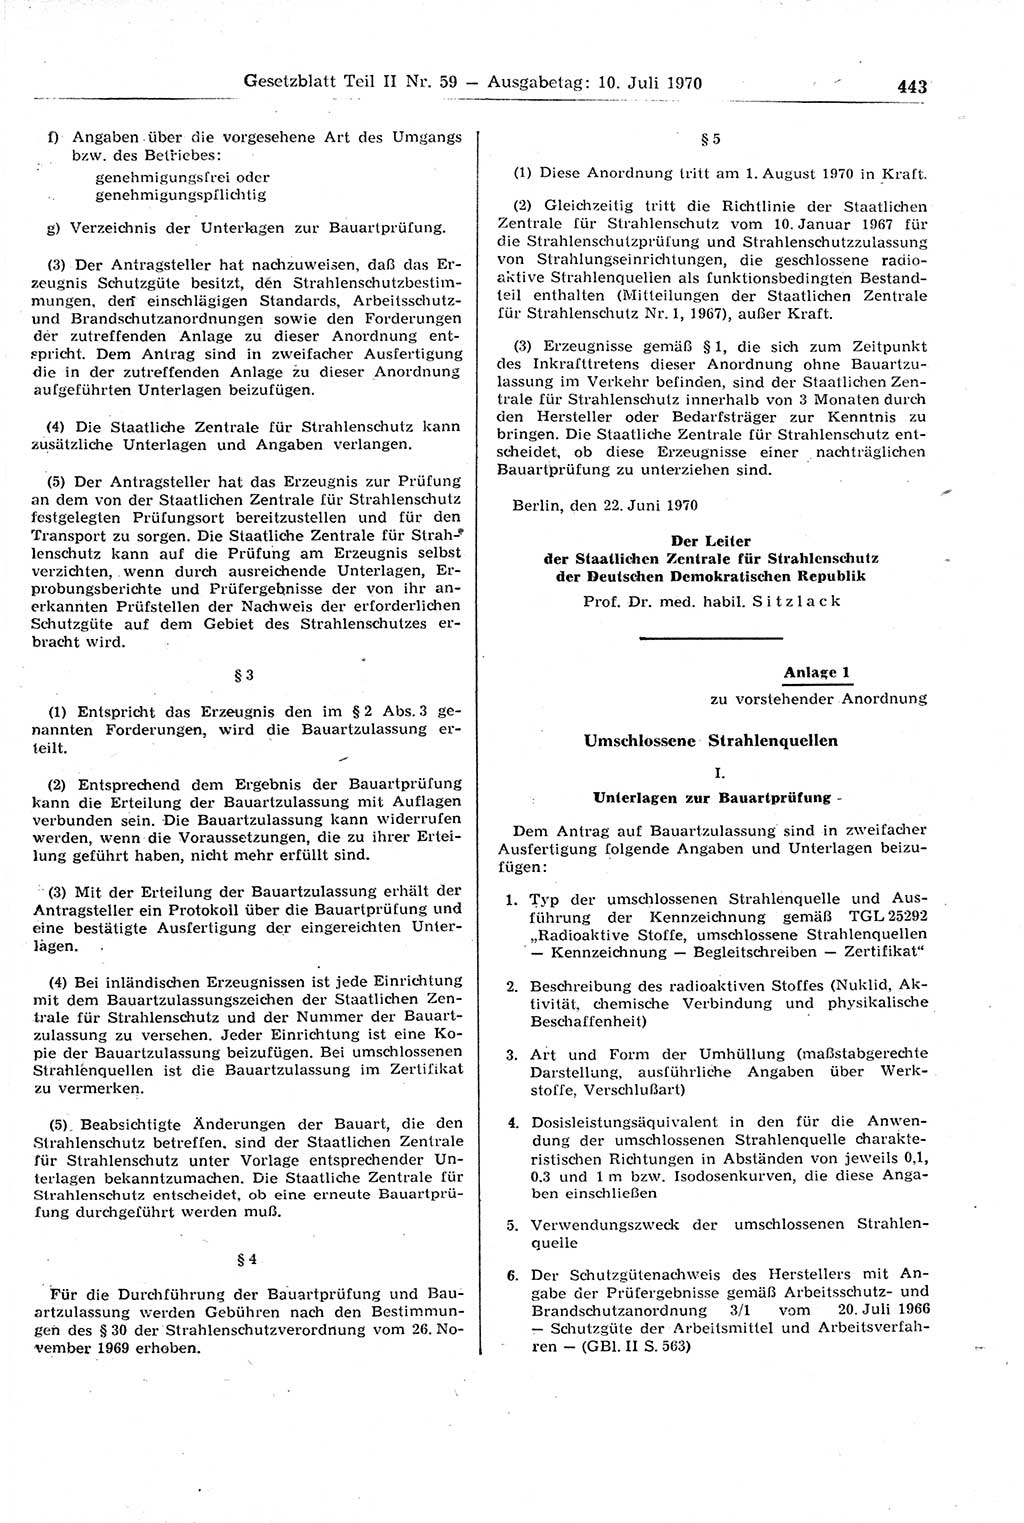 Gesetzblatt (GBl.) der Deutschen Demokratischen Republik (DDR) Teil ⅠⅠ 1970, Seite 443 (GBl. DDR ⅠⅠ 1970, S. 443)